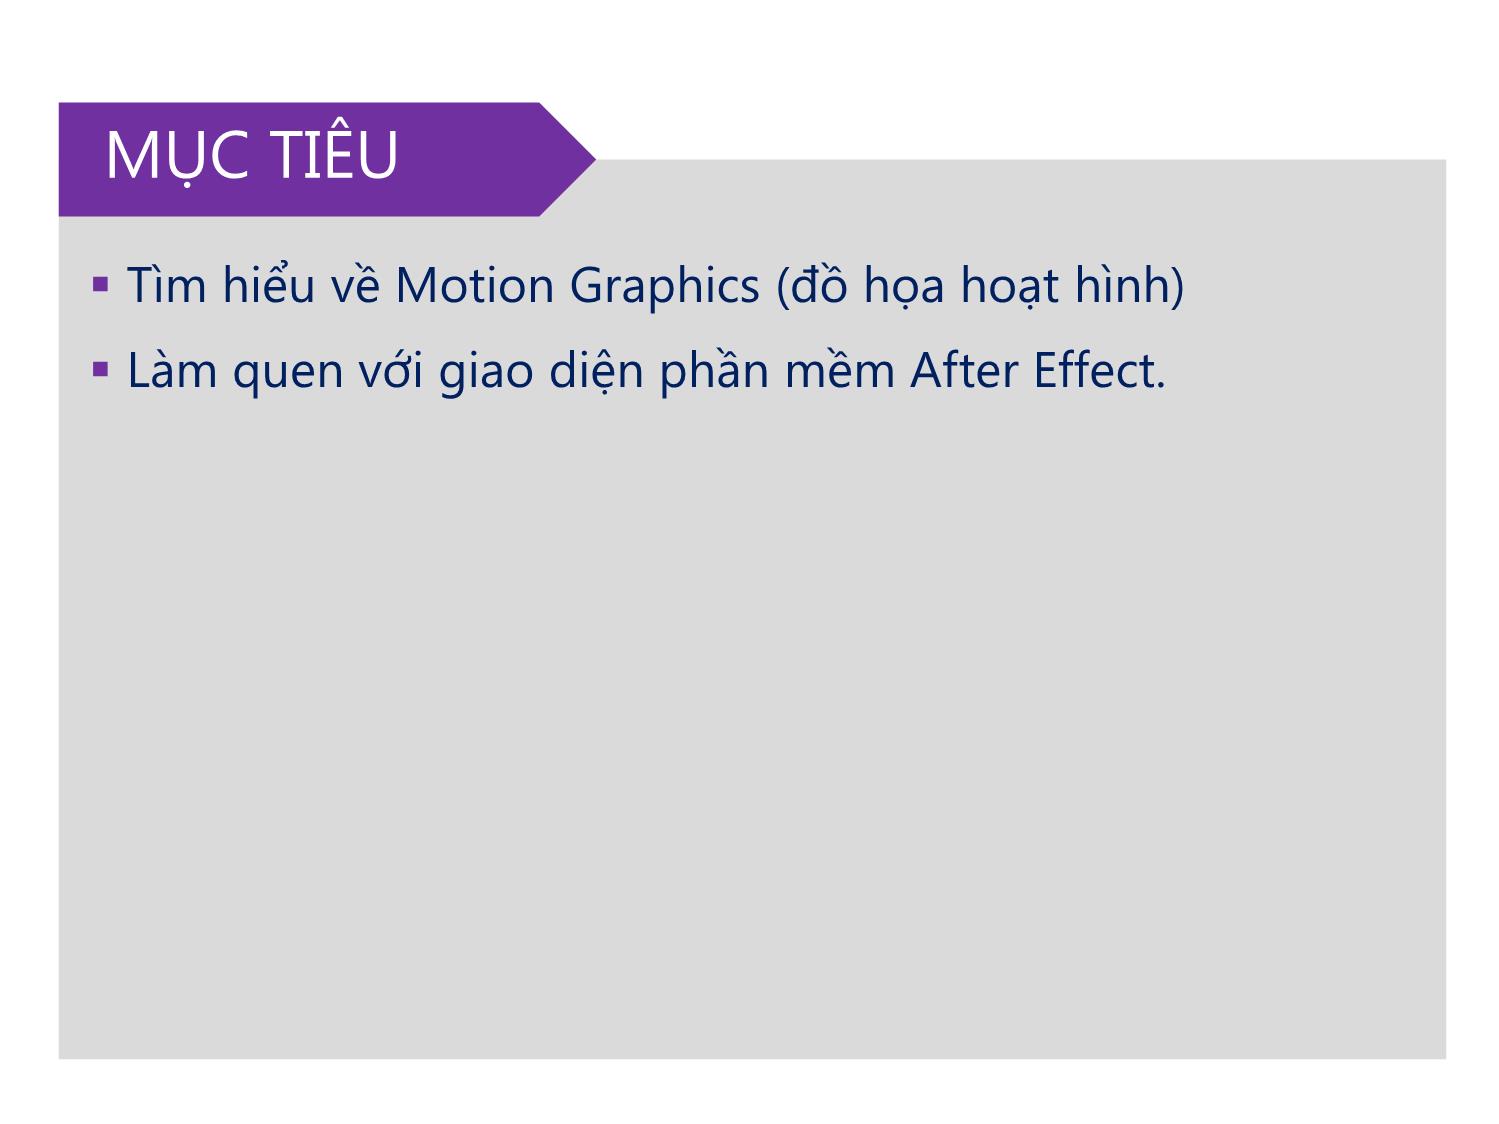 Bài giảng Xử lý kỹ xảo với After Effect Cs6 - Bài 1: Tìm hiểu về Motion Graphic và giao diện phần mềm After Effect Cs6 trang 3